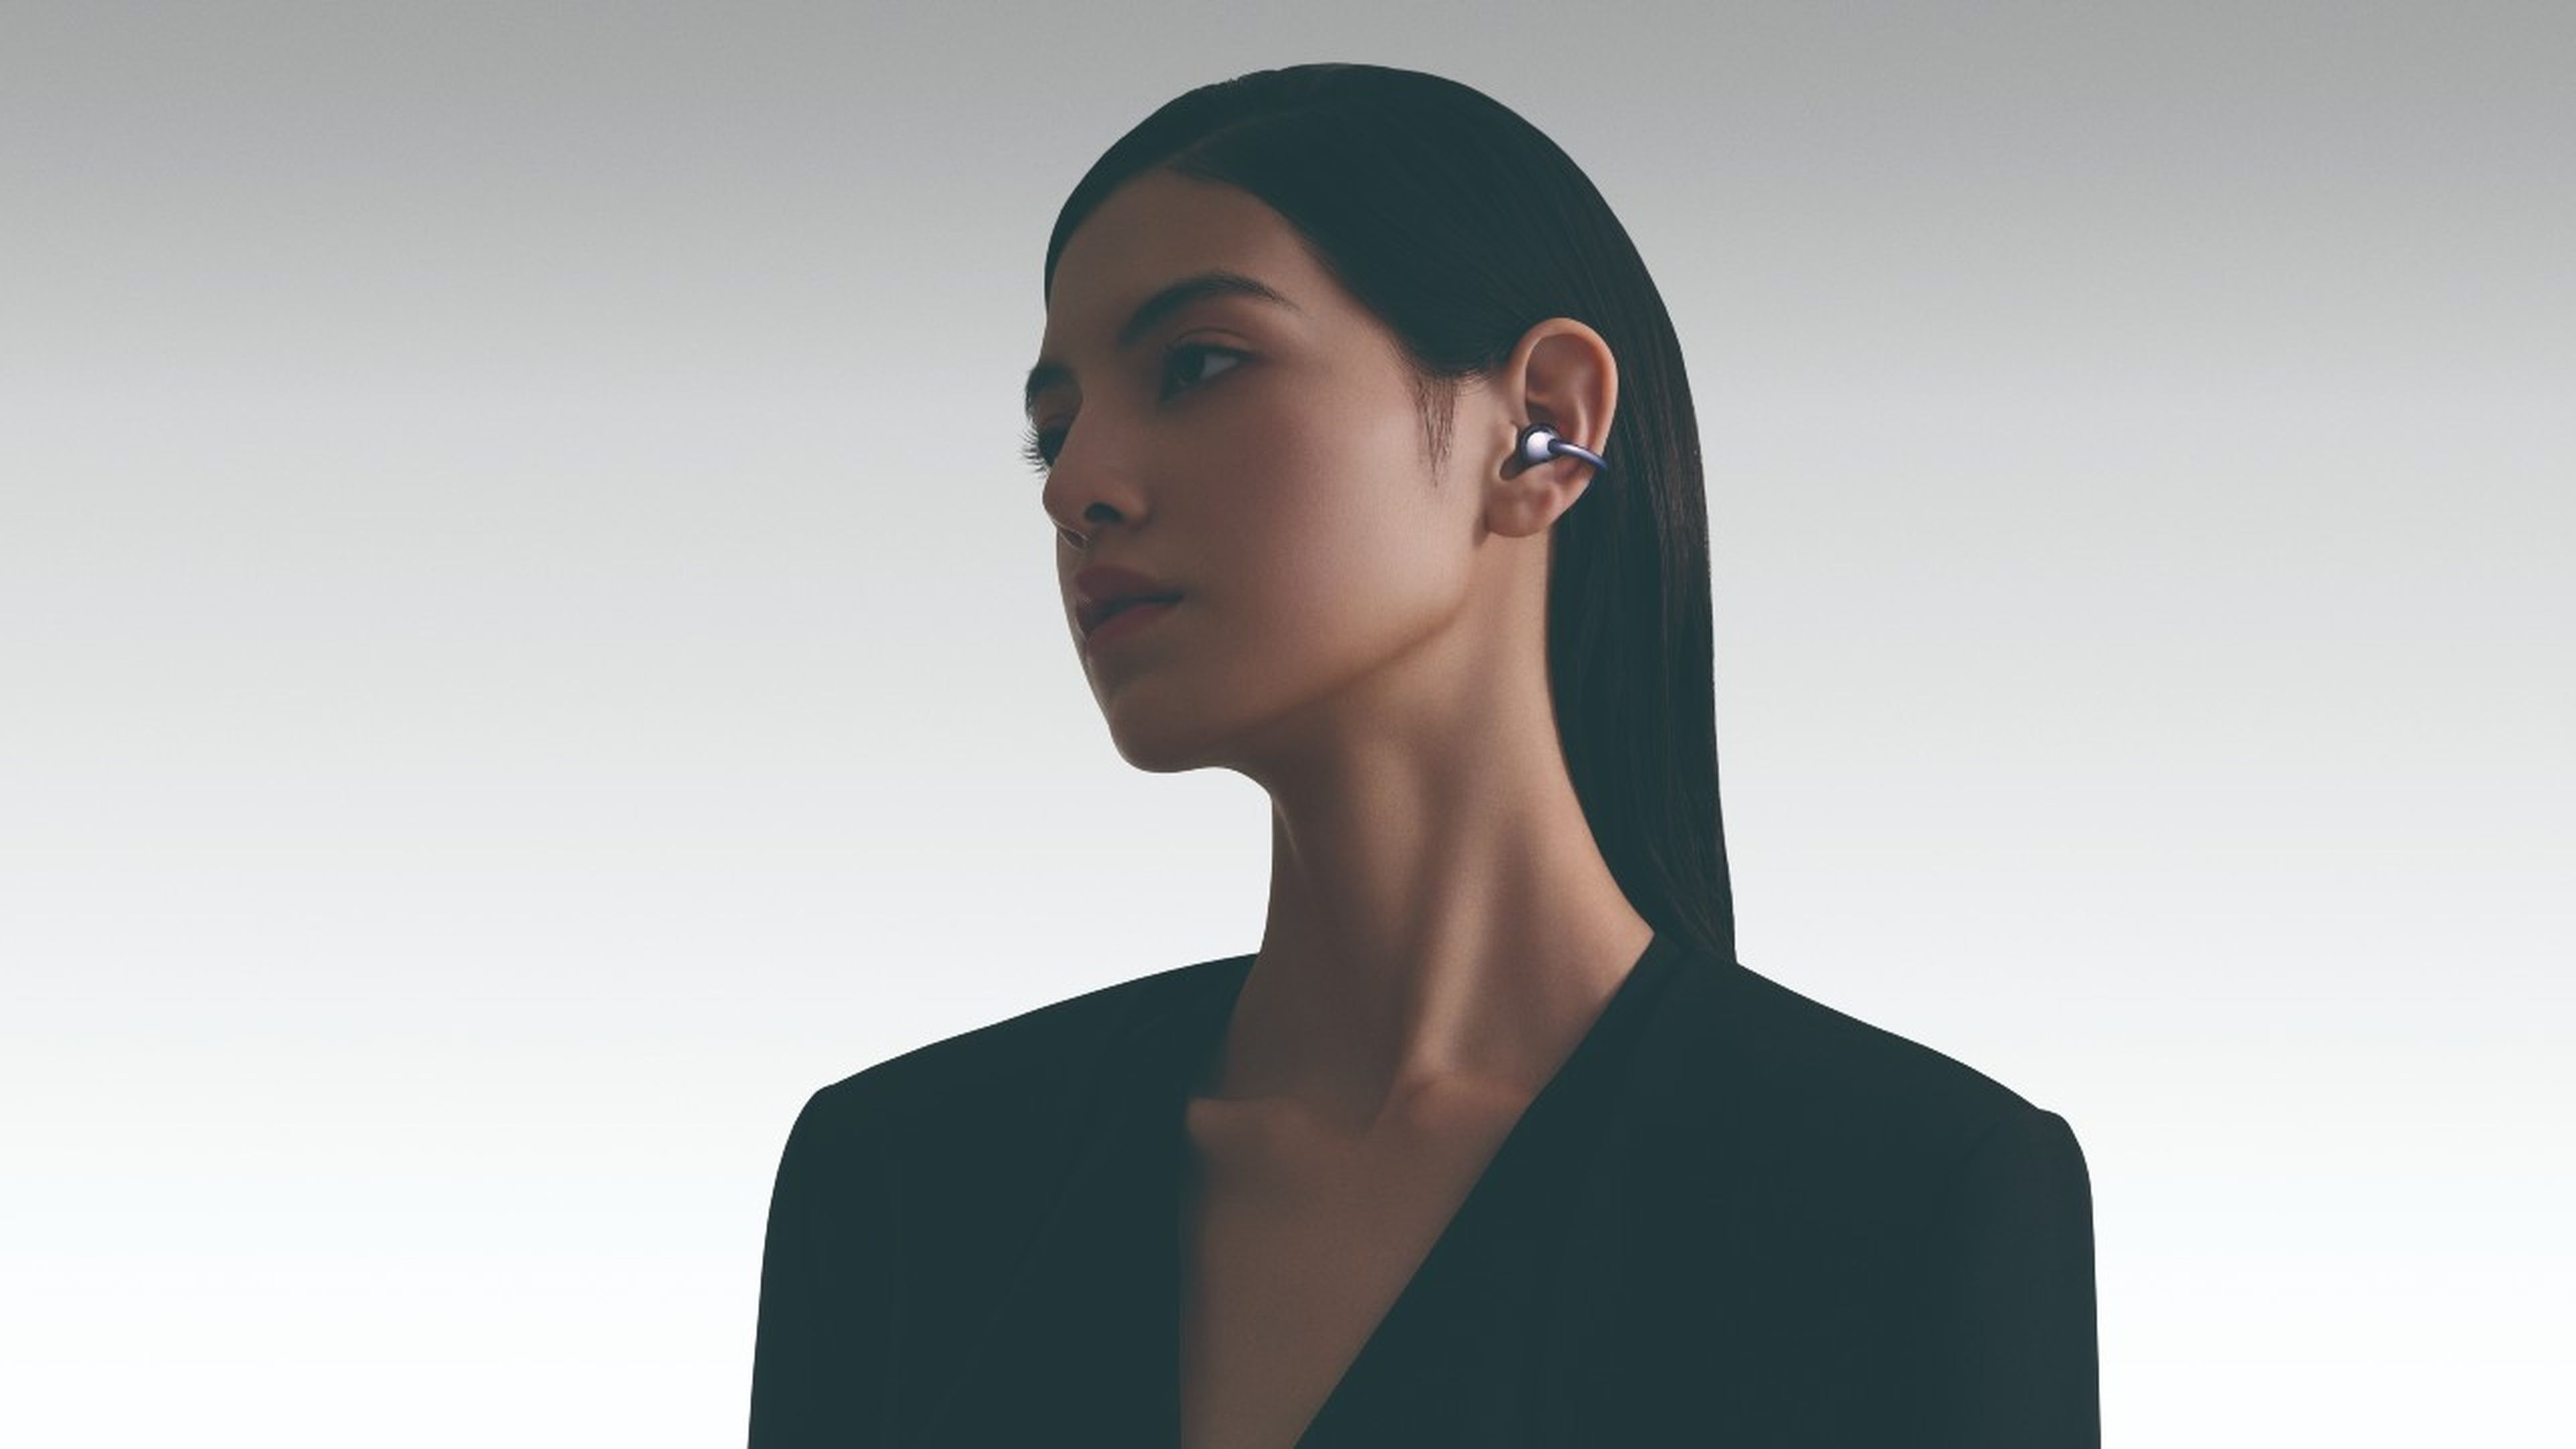 HUAWEI ha sido capaz de diseñar unos auriculares inalámbricos (TWS) Open-Earbuds con el mejor ajuste ergonómico y sin perder un ápice de diseño.